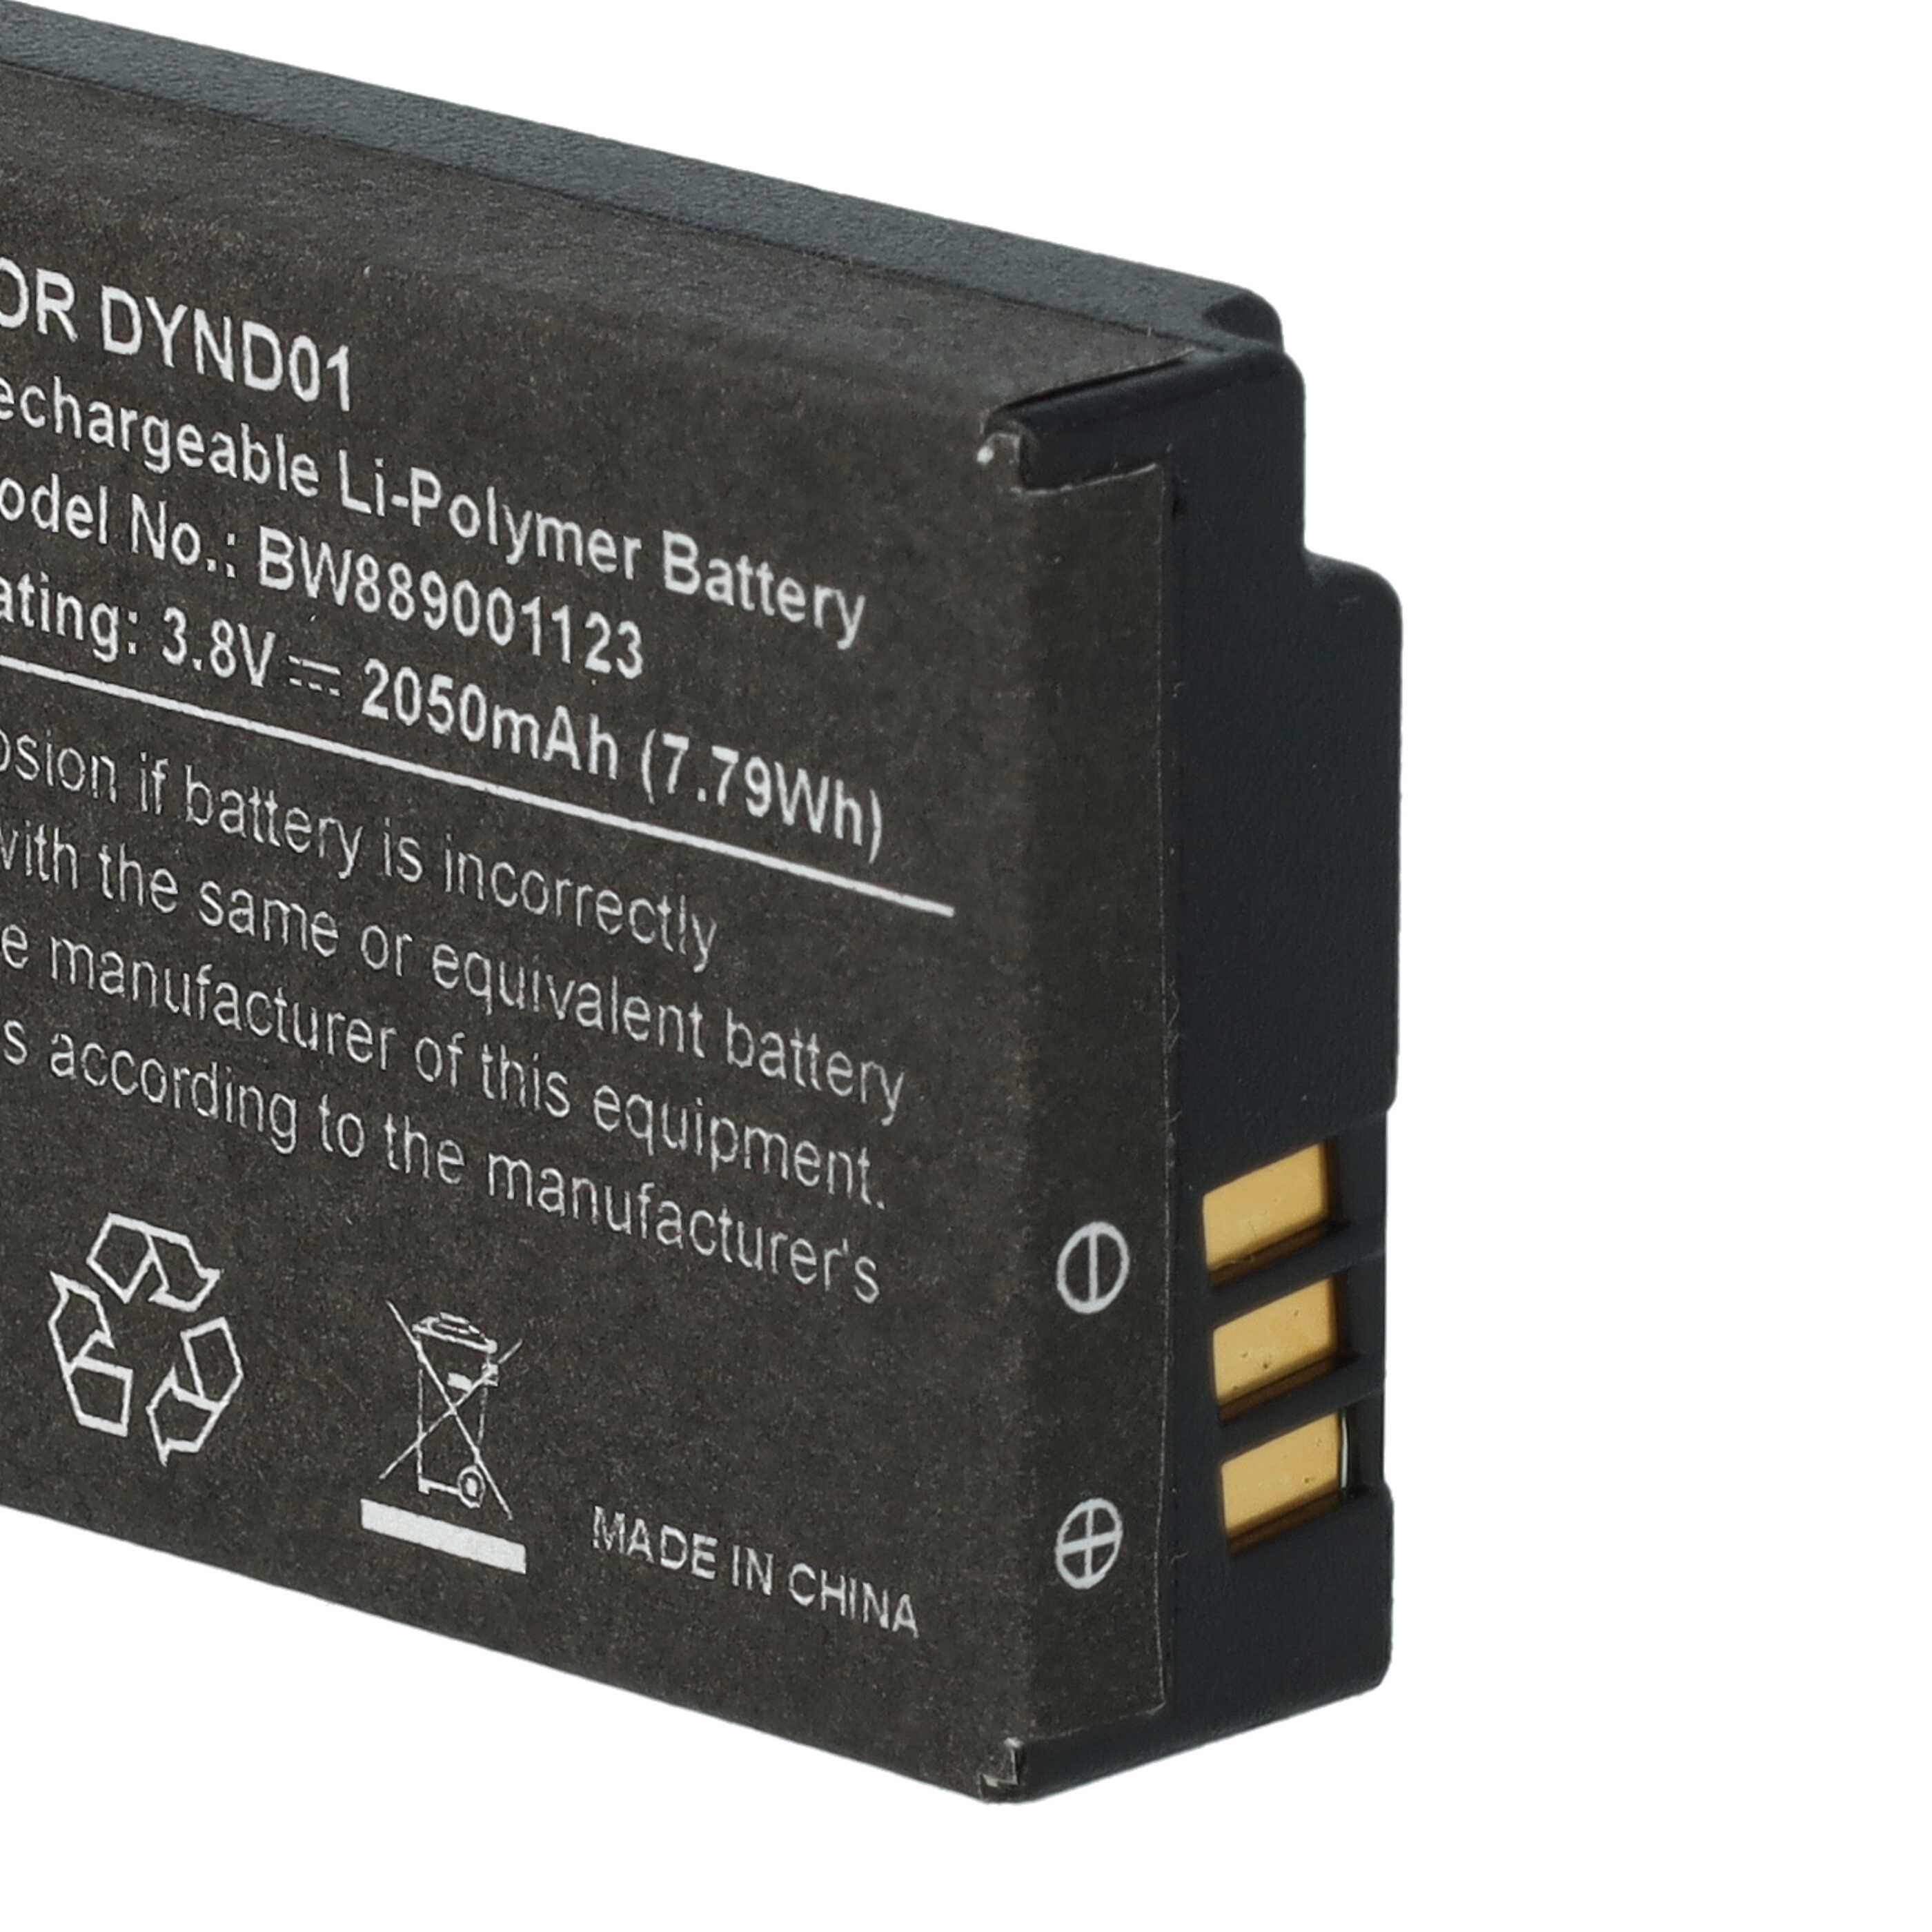 Batteria per console di gioco sostituisce Microsoft DYND01 - 2050mAh, 3,8V